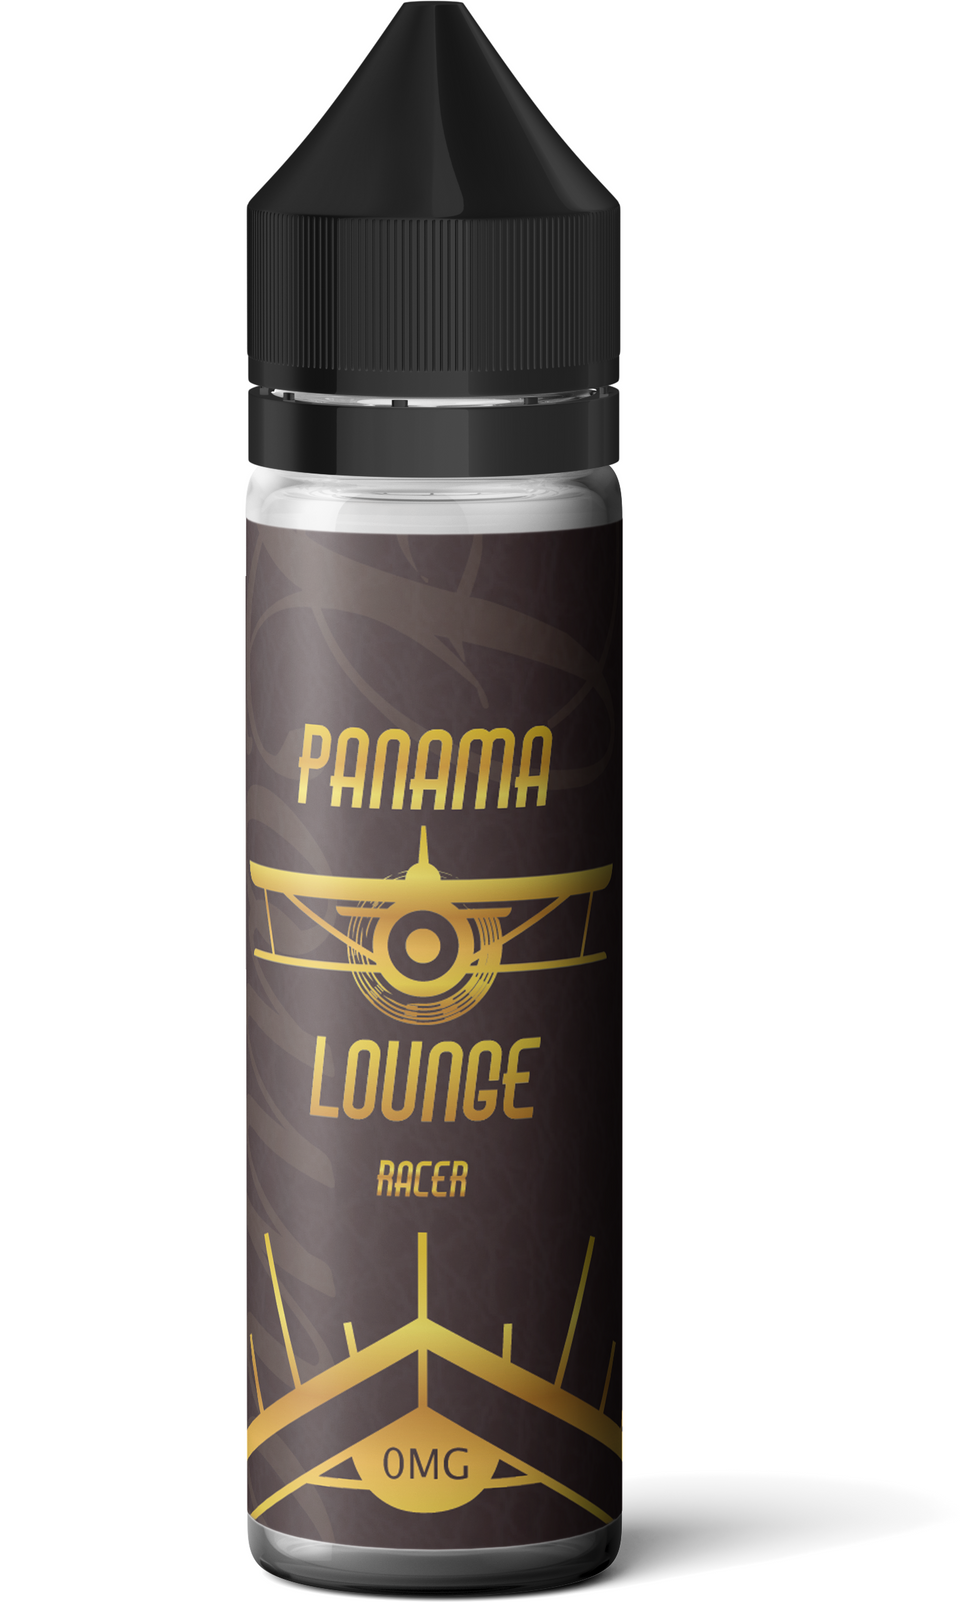 Panama Lounge 50ml Shortfill- Racer - ASPIRE UK